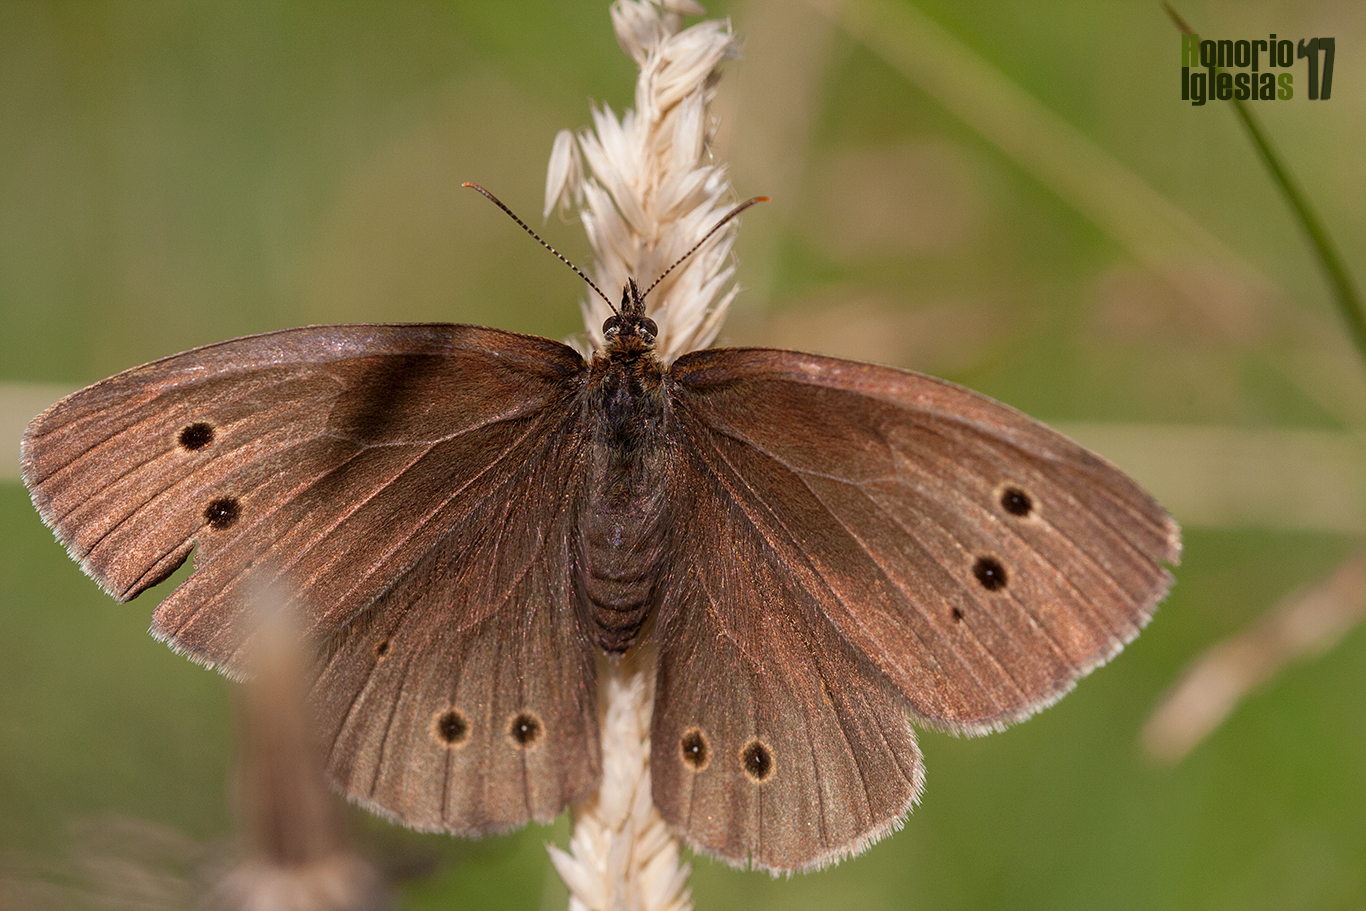 Ejemplaar de mariposa sortijitas (Aphantopus hyperantus) mostrando su anverso alar. Es una mariposa muy localizada en la sierra de Guadarrama, con tan solo dos colonias conocidas en ella.